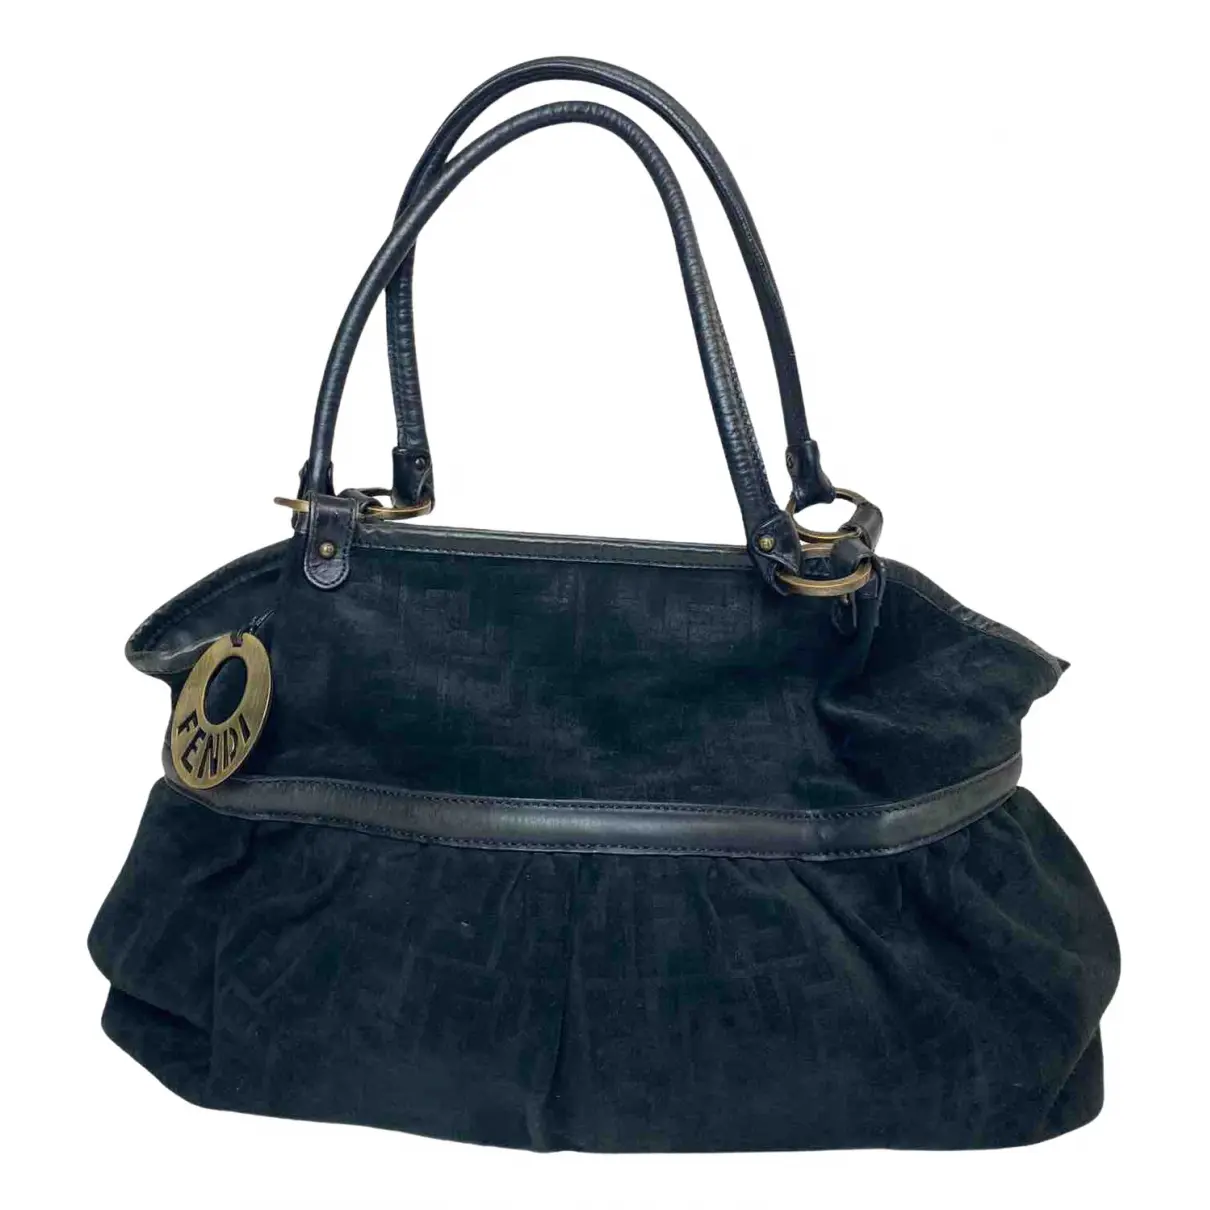 Chef leather handbag Fendi - Vintage